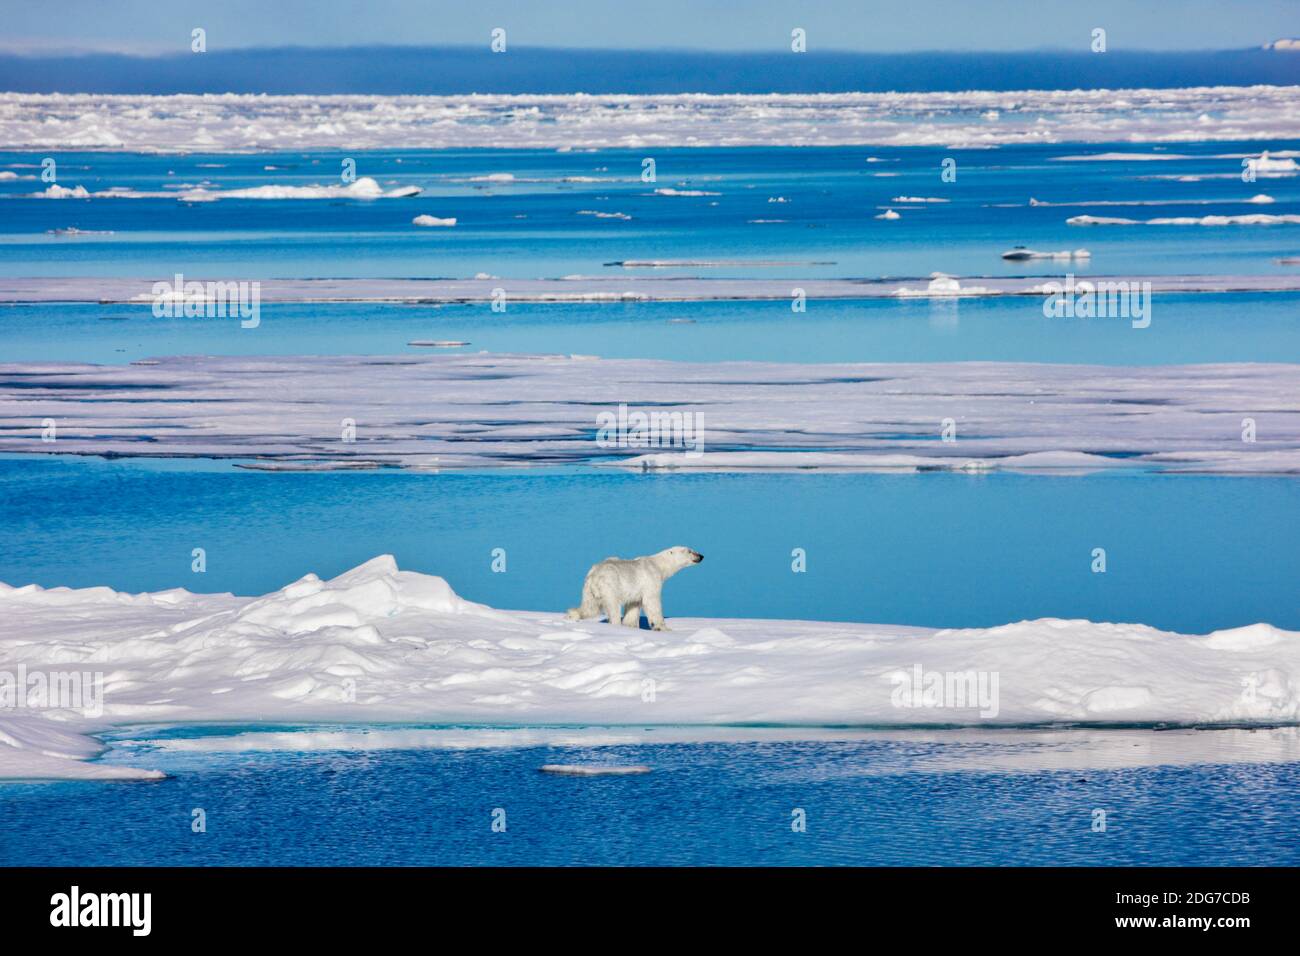 Ours polaire sur la glace flottante dans l'océan Arctique, Spitsbergen, Norvège Banque D'Images